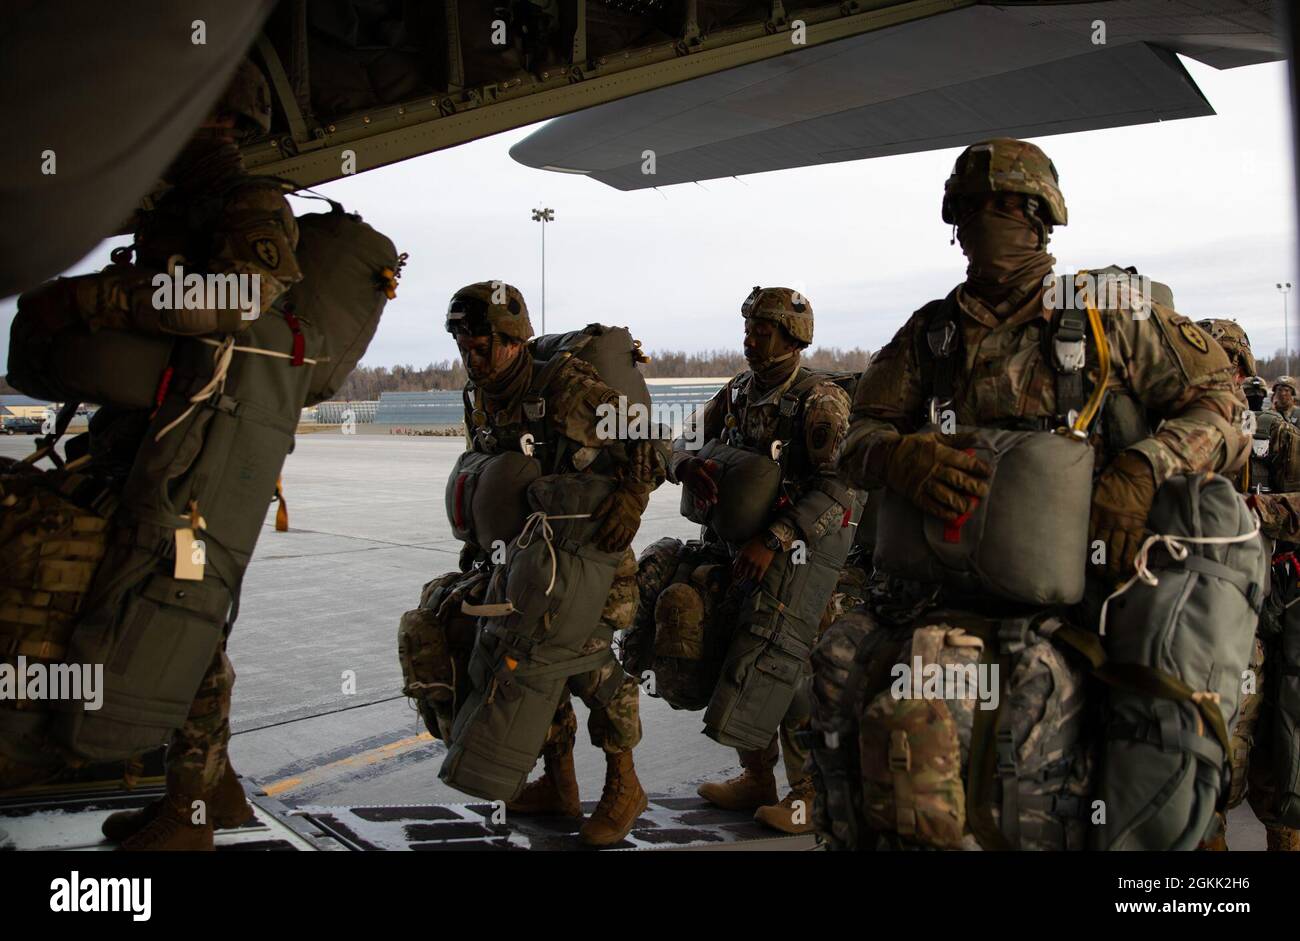 Des parachutistes de l'armée américaine affectés au 1er Bataillon (Airborne), 501e Régiment d'infanterie, embarquèrent un C-130 Hercules à la base interarmées Elmendorf-Richardson, le 11 mai 2021, à l'appui de l'opération d'entrée forcée conjointe dans le cadre de Northern Edge 2021. L'exercice JFEO a impliqué plus de 400 parachutistes de l'armée américaine, Et d'autres membres militaires de l'armée de terre, de la marine, de la Force aérienne et des Marines des États-Unis, et plus d'une douzaine d'aéronefs affectés à des escadrons à travers les États-Unis, y compris les CH-47, et la US Air Force HC-130 Hercules, MC-130J Commando IIS et C-17 Globemaster IIIs. Entraînement réaliste de combat, li Banque D'Images